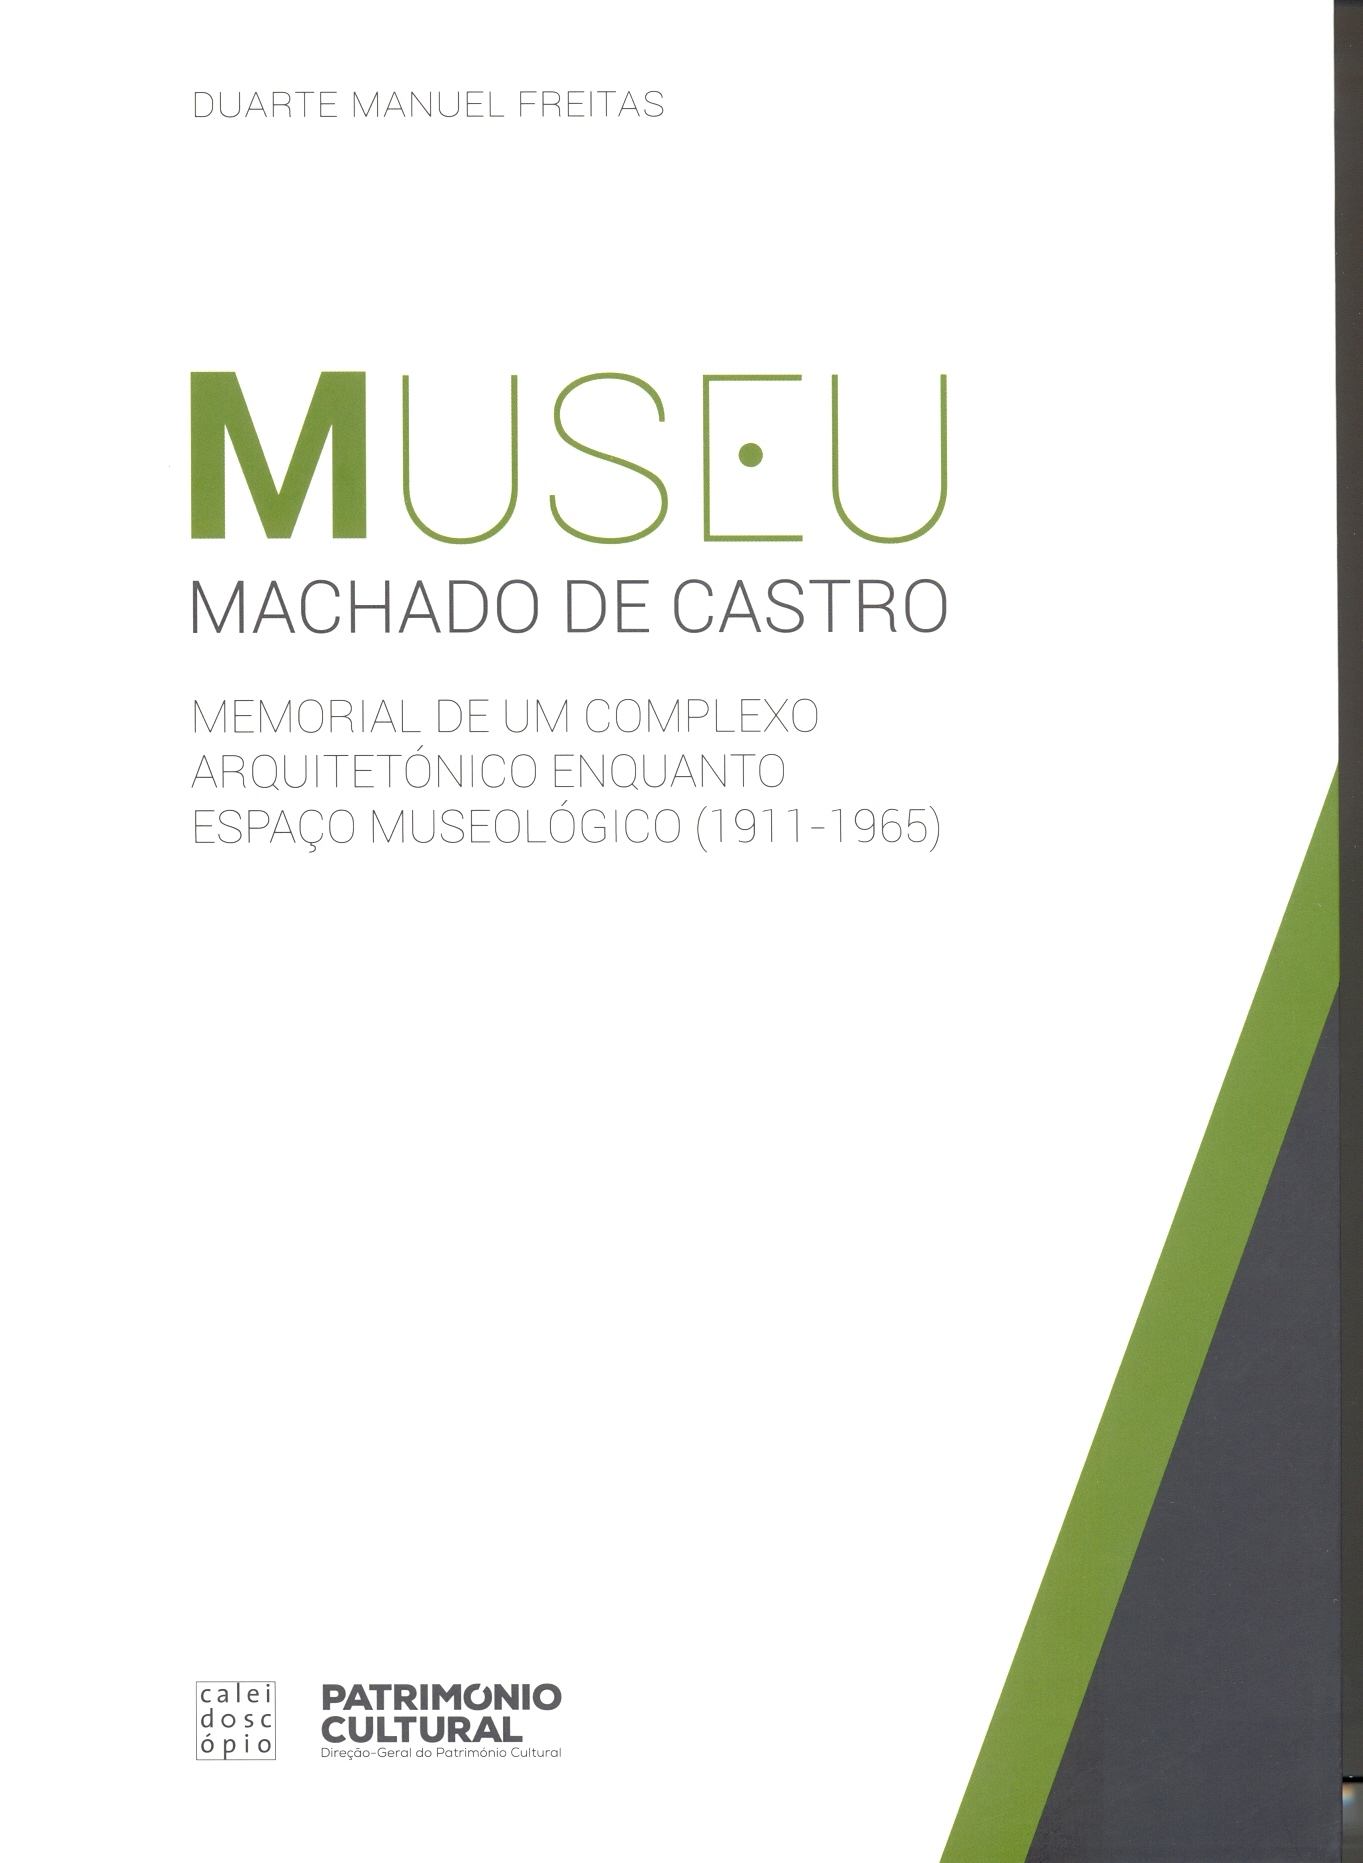 Duarte Manuel Freitas – Museu Machado de Castro: Memorial de um Complexo Arquitetónico Enquanto E...